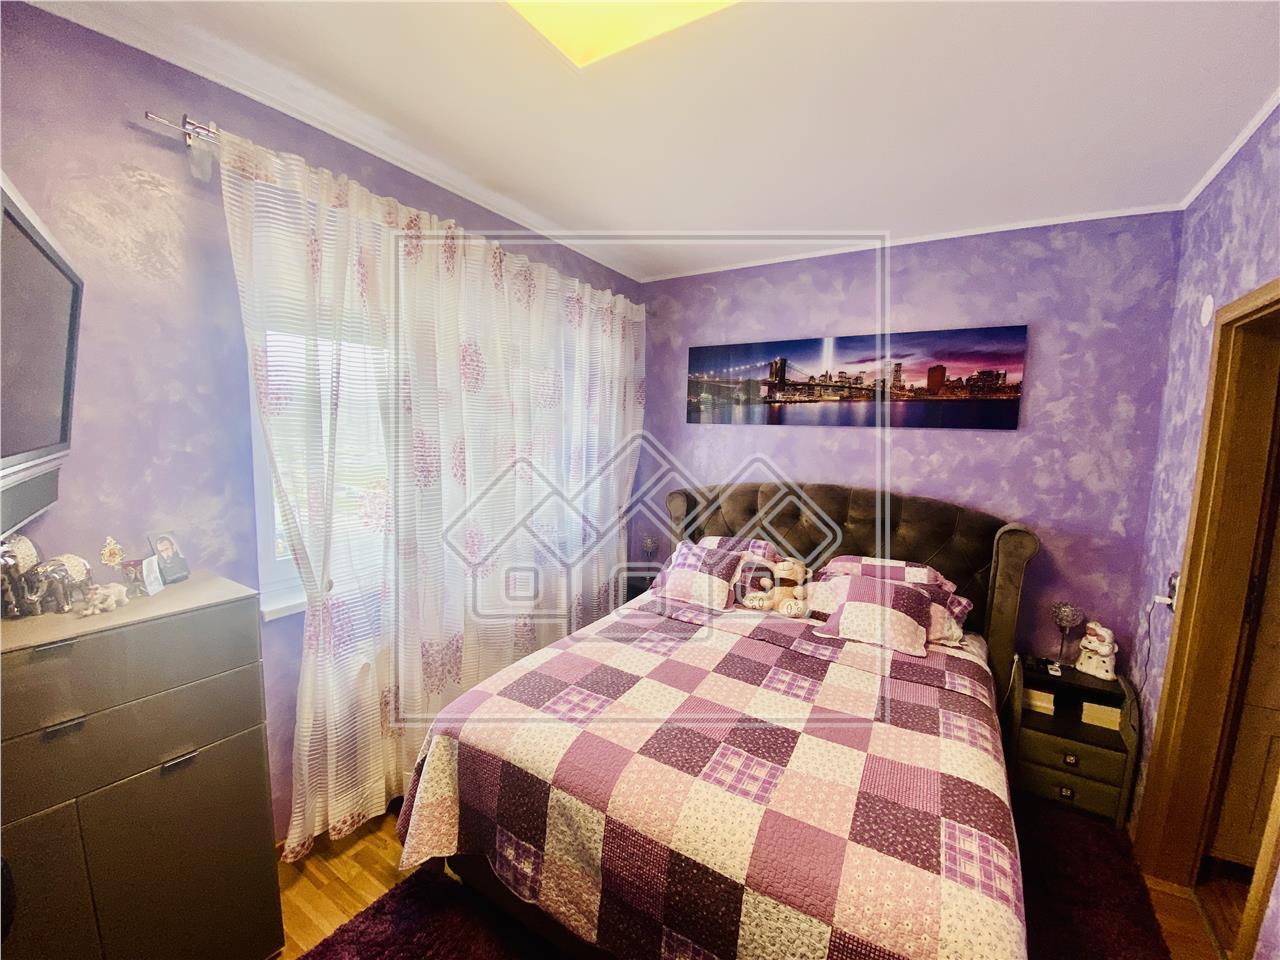 Wohnung zu verkaufen in Sibiu - 2 Zimmer und Balkon - modern m?bliert